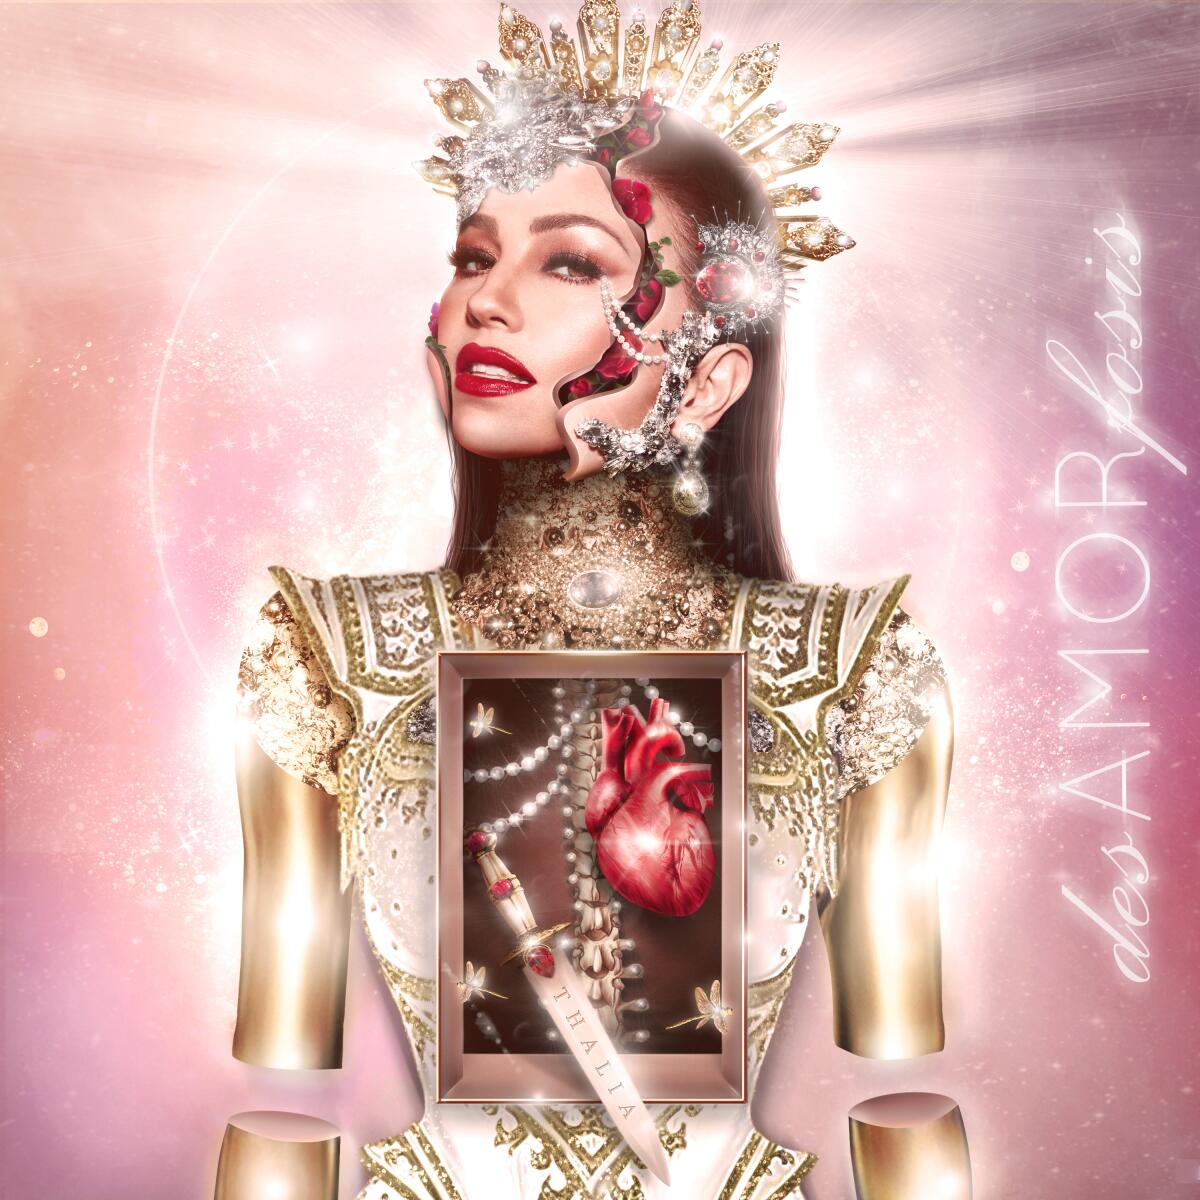  la portada del nuevo álbum de Thalía "desAMORfosis", lanzado el viernes. (Sony Music Latin vía AP)